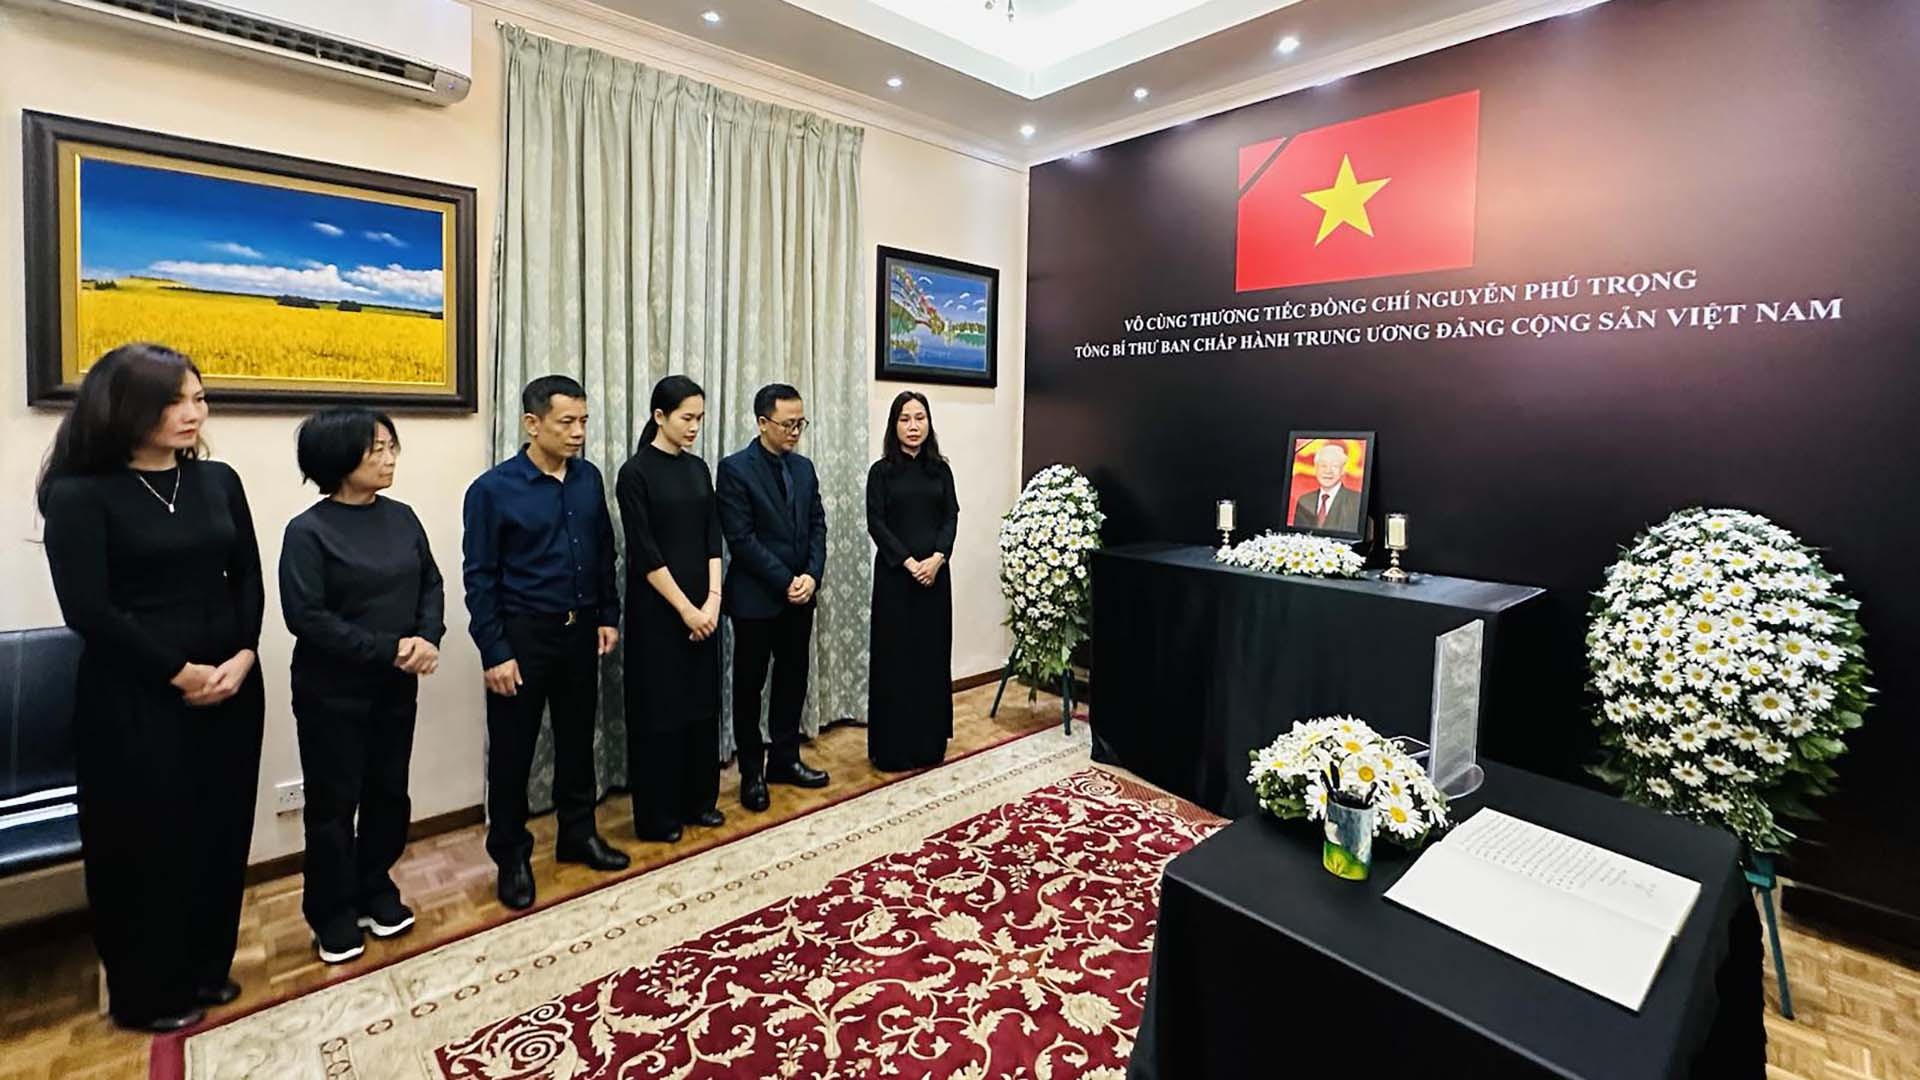 Đảng Cộng sản Sri Lanka treo cờ rủ tưởng niệm Tổng Bí thư Nguyễn Phú Trọng